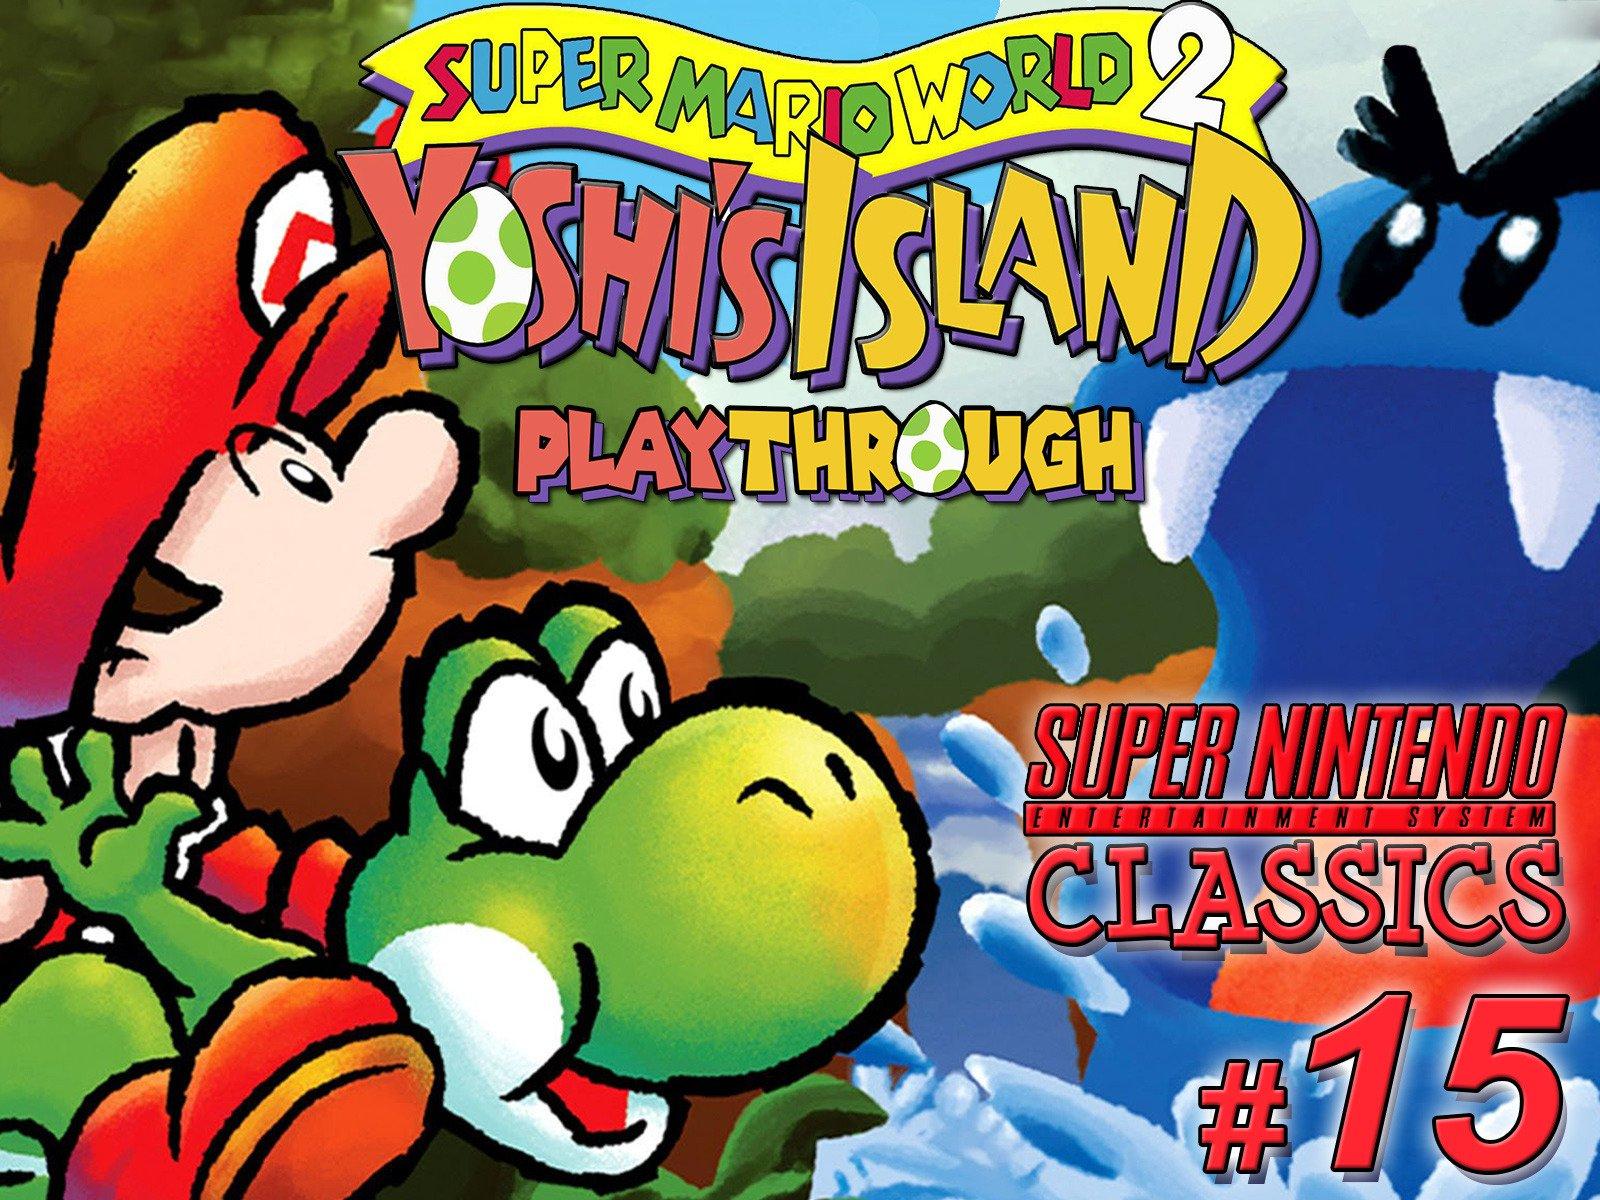 Yoshi island 2. Super Mario World 2 - Yoshi's Island Snes. Super Mario World 2 Yoshis Island. Mario Yoshi Island. Super Mario World 2 Yoshi's Island Snes обложка.